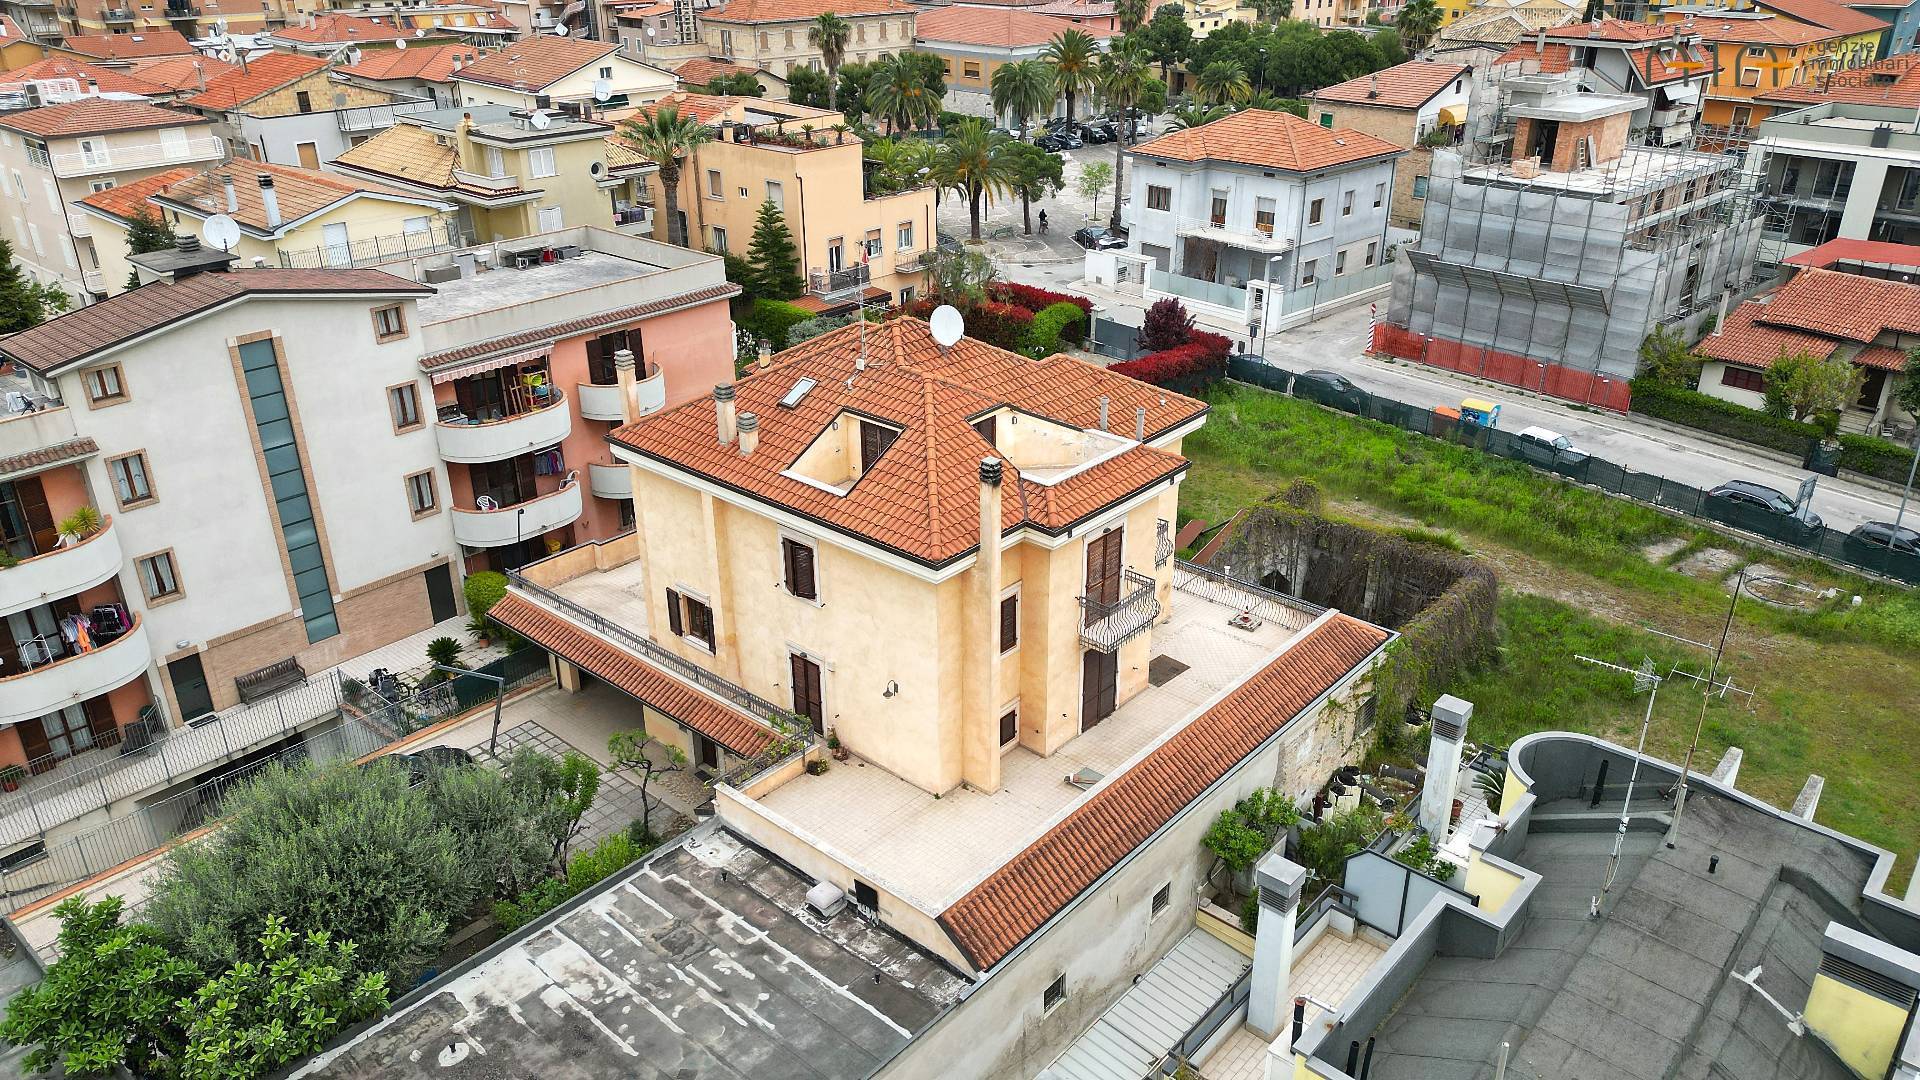 Villa in vendita a San Benedetto del Tronto, 14 locali, zona Località: PortoDascoliresidenziale, prezzo € 800.000 | PortaleAgenzieImmobiliari.it